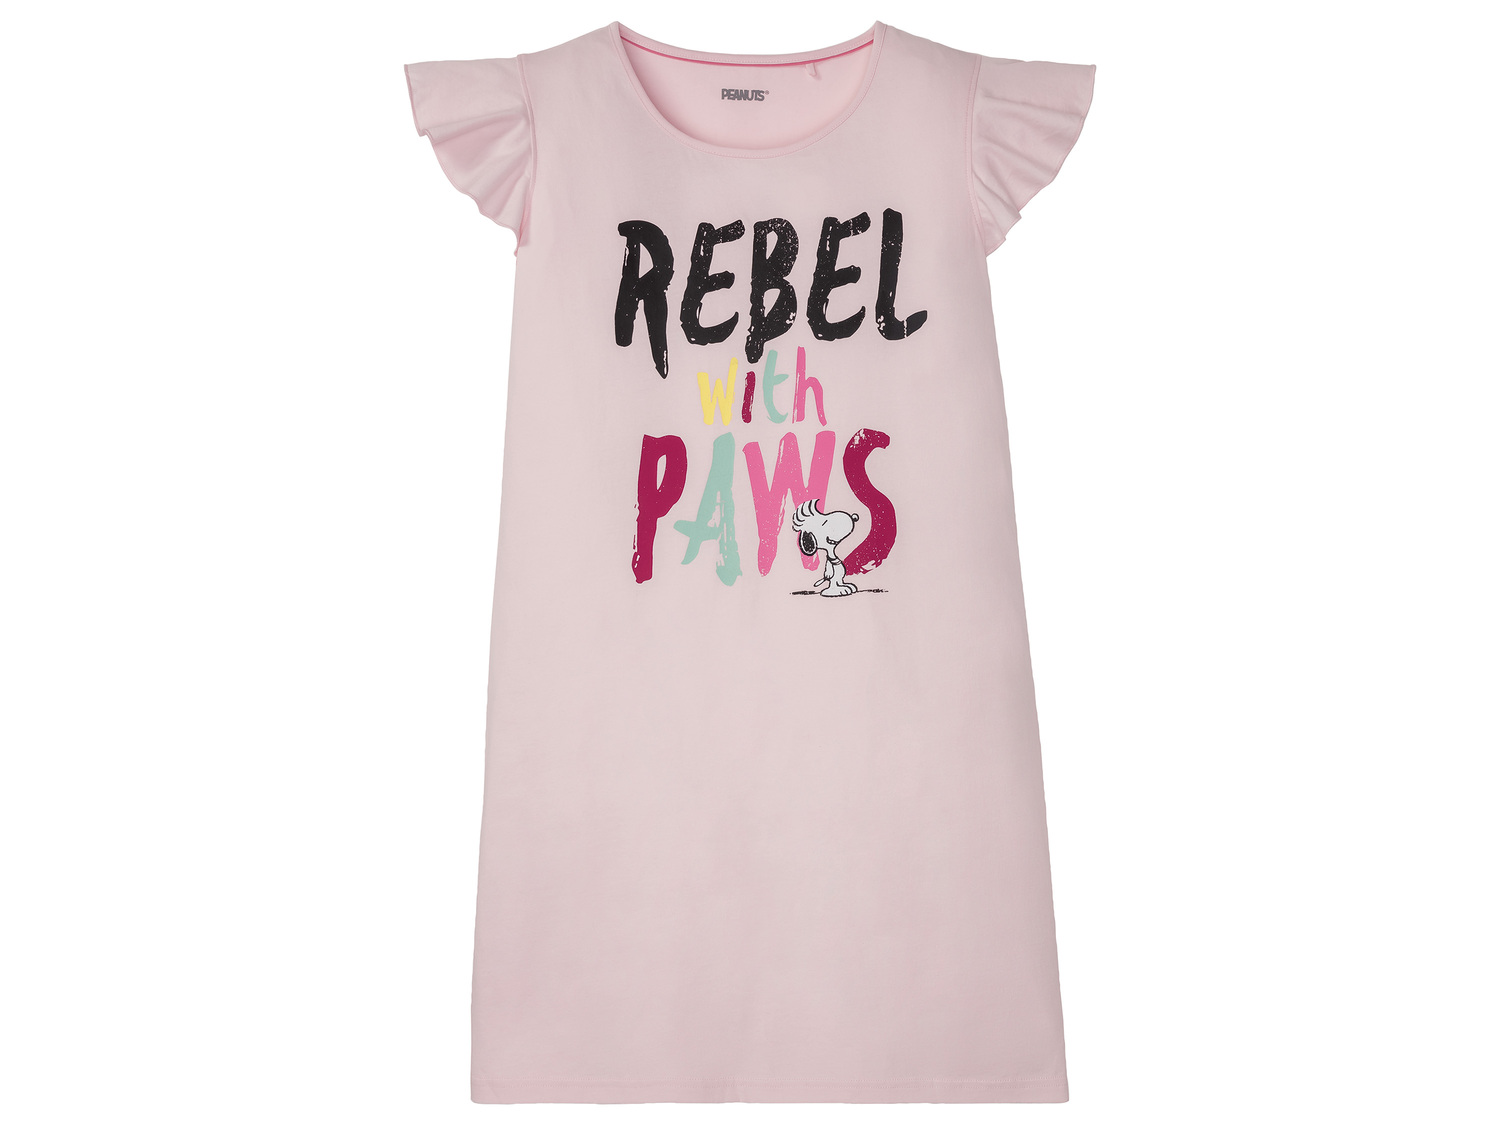 T-shirt long femme Pink Panther, Peanuts, le prix 5.99 € 
- Du S au XL selon ...